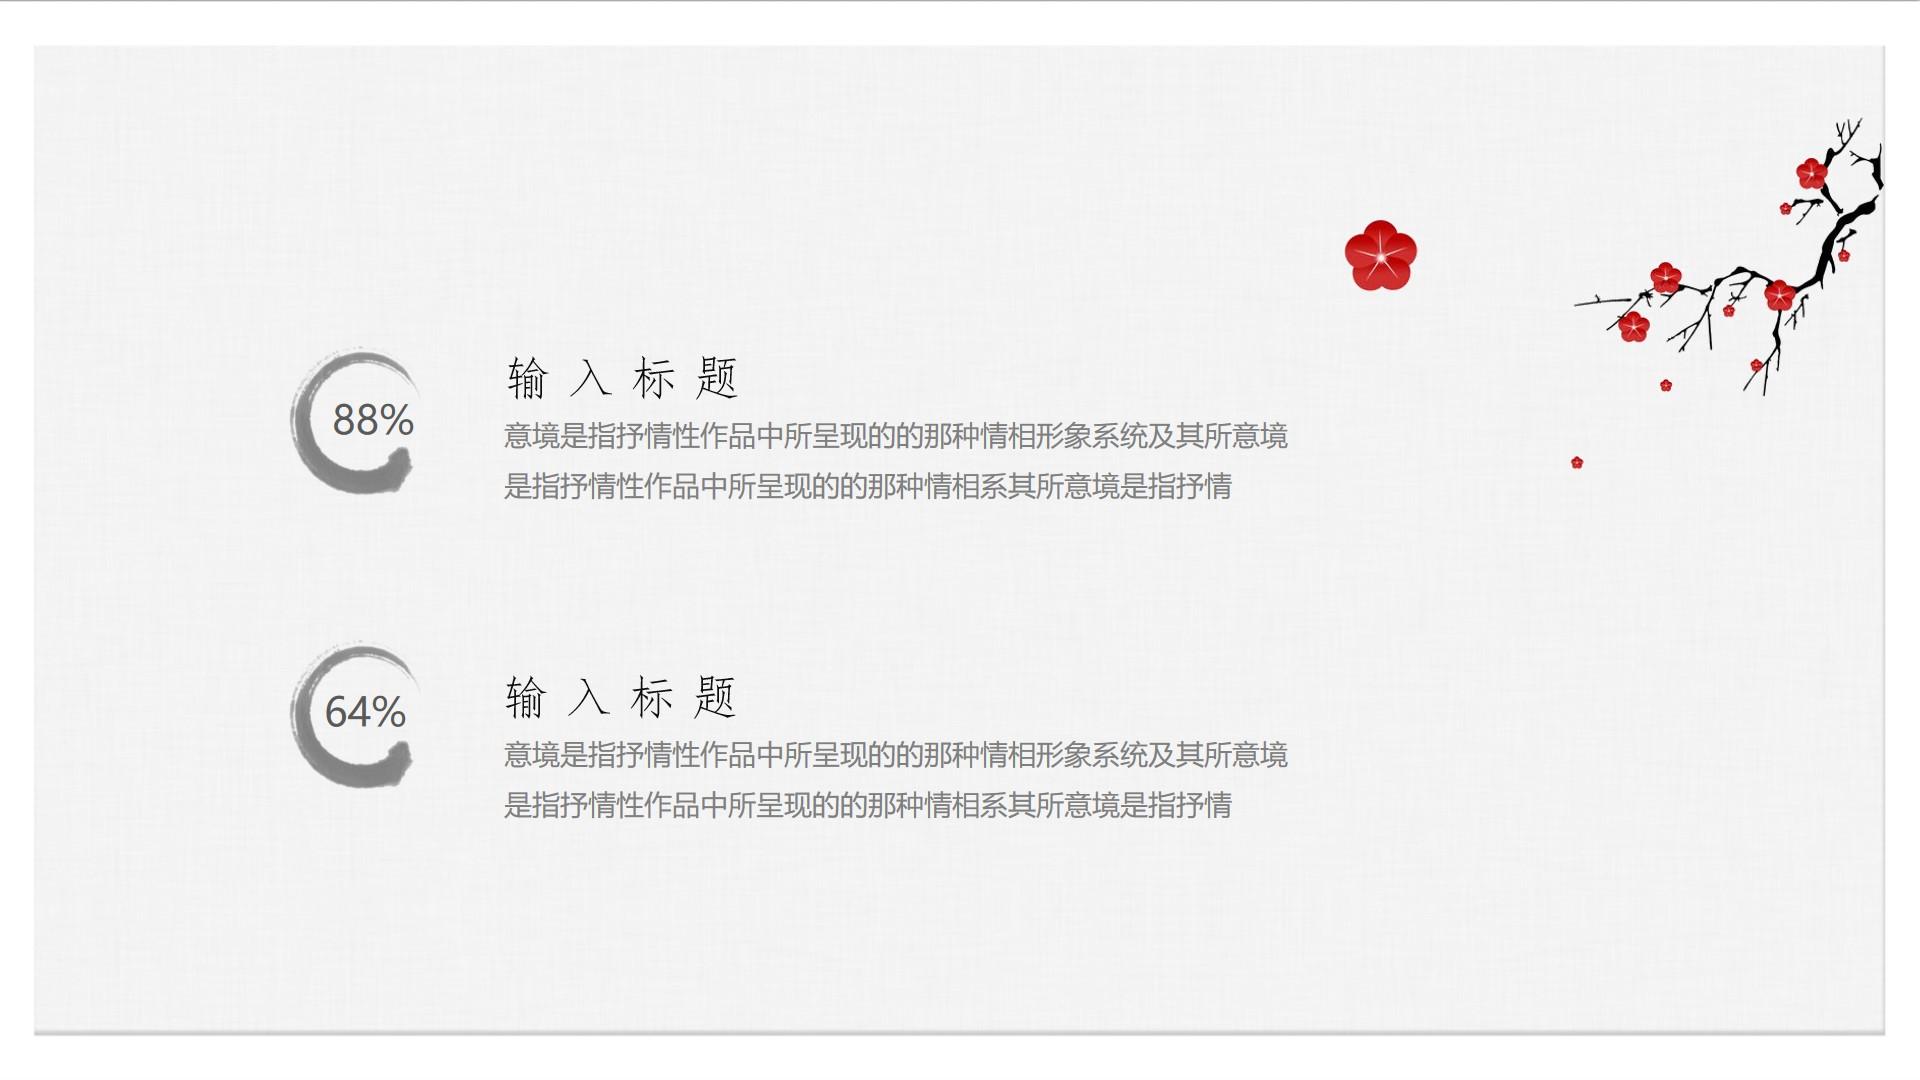 教育教学白色灰色简洁中国风素雅作品意境形象系统抒情云素材PPT模板1672598364117